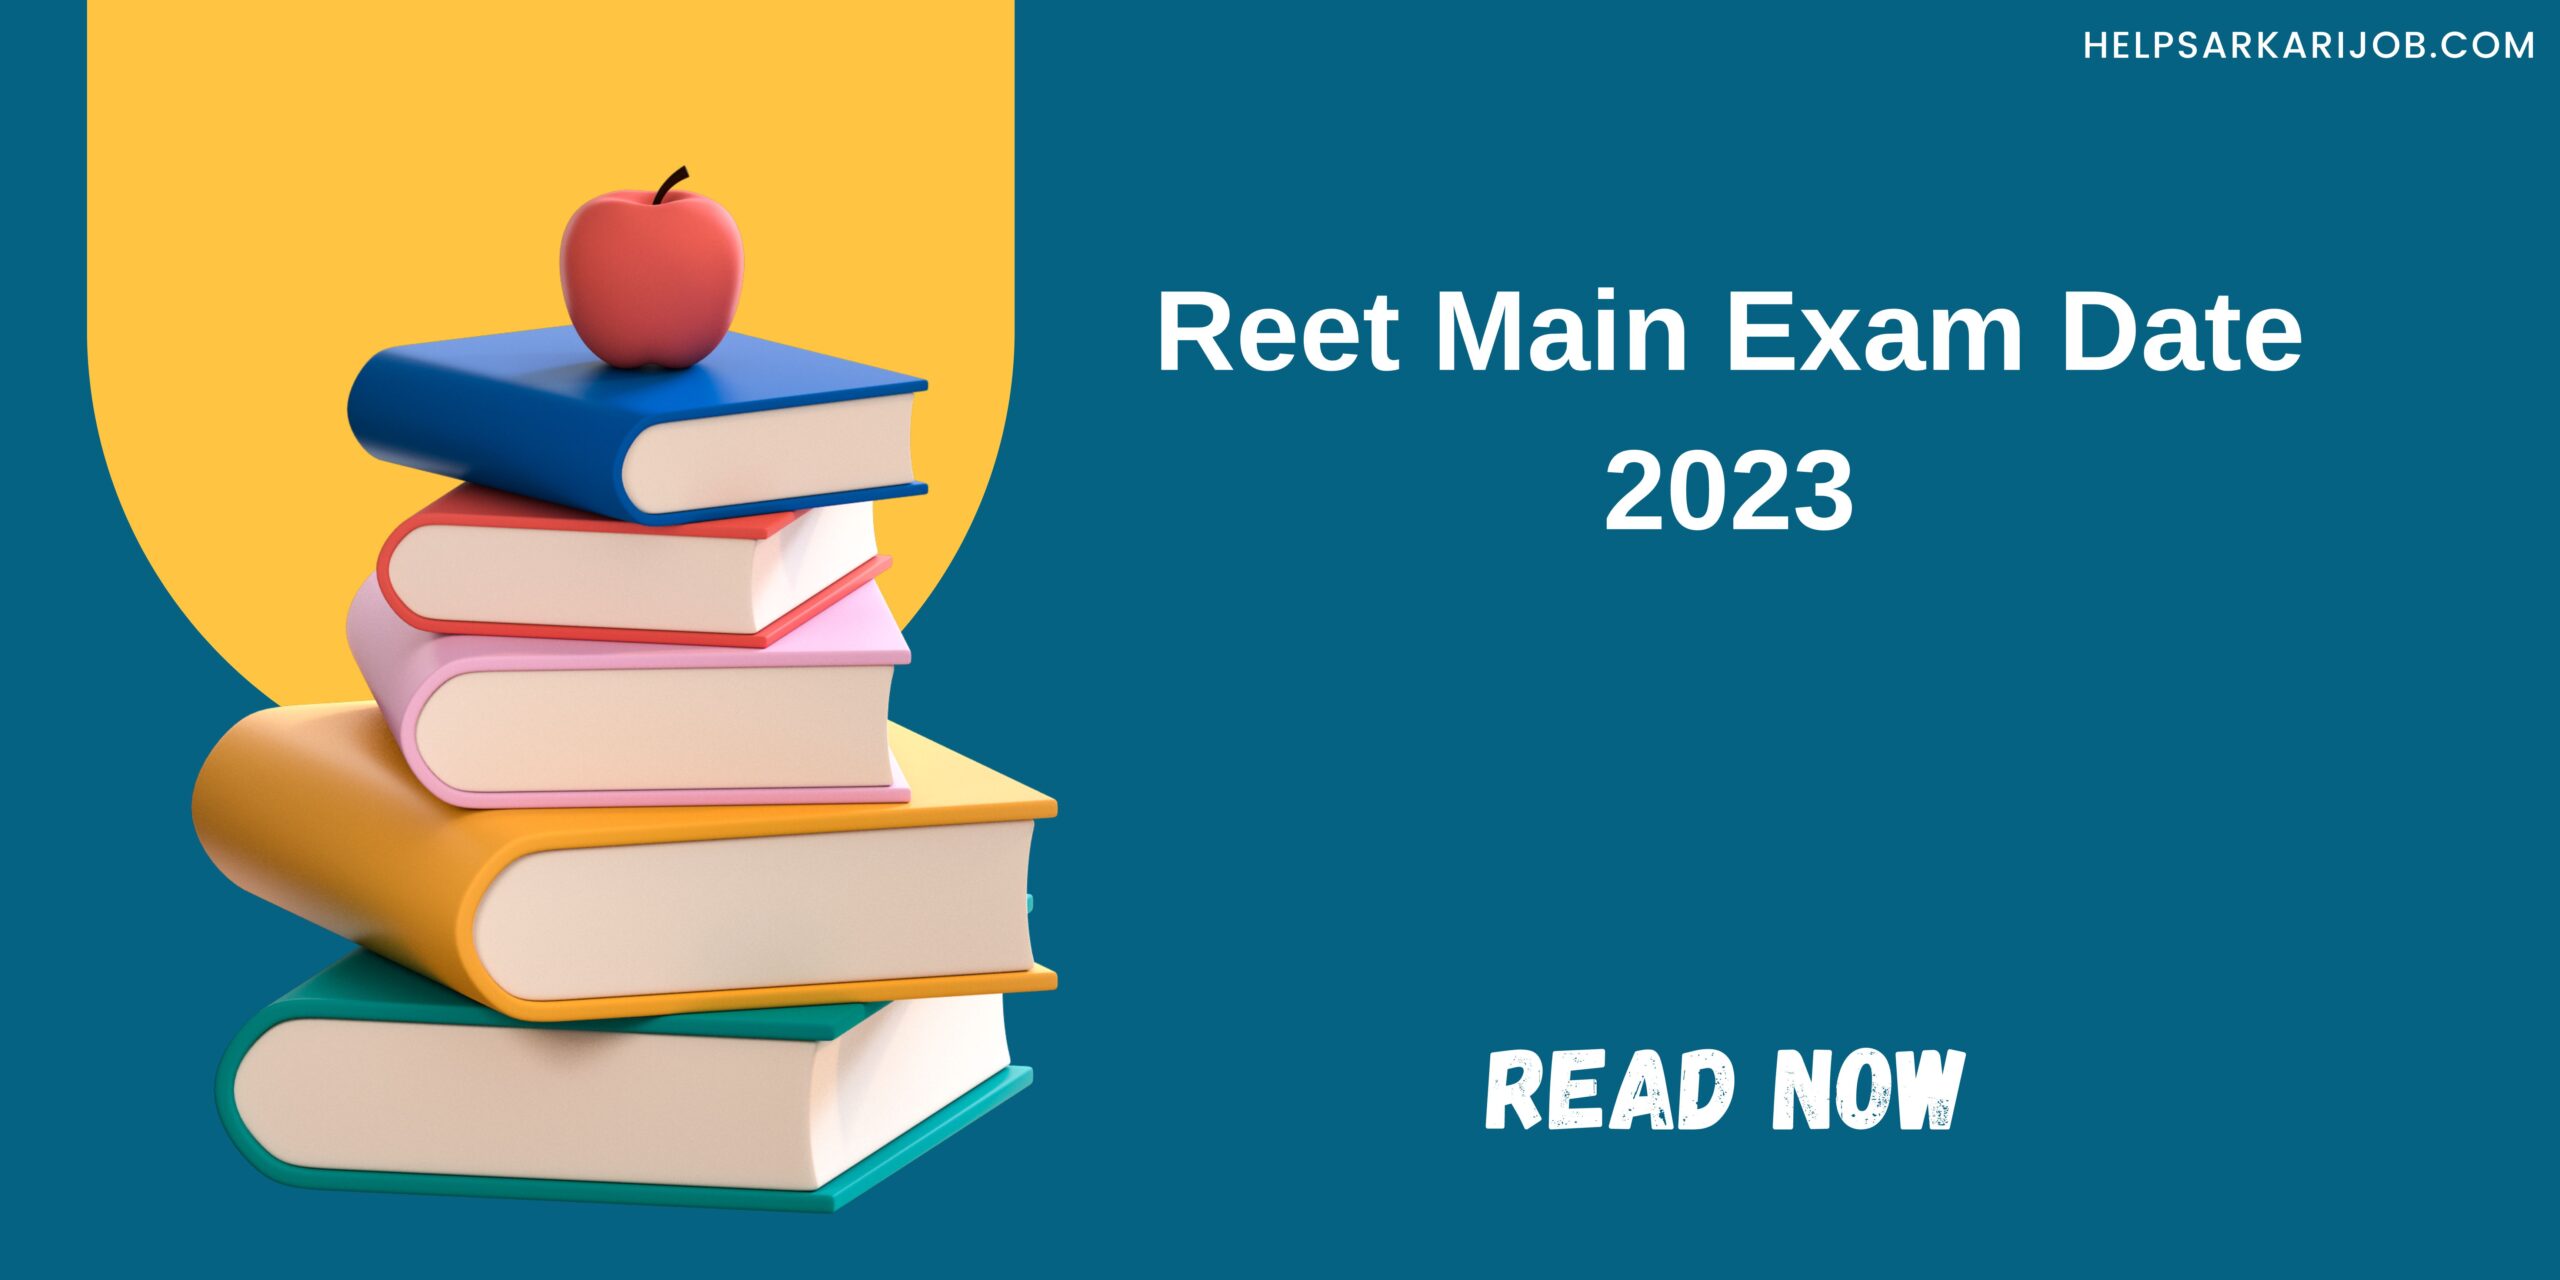 Reet Main Exam Date 2023